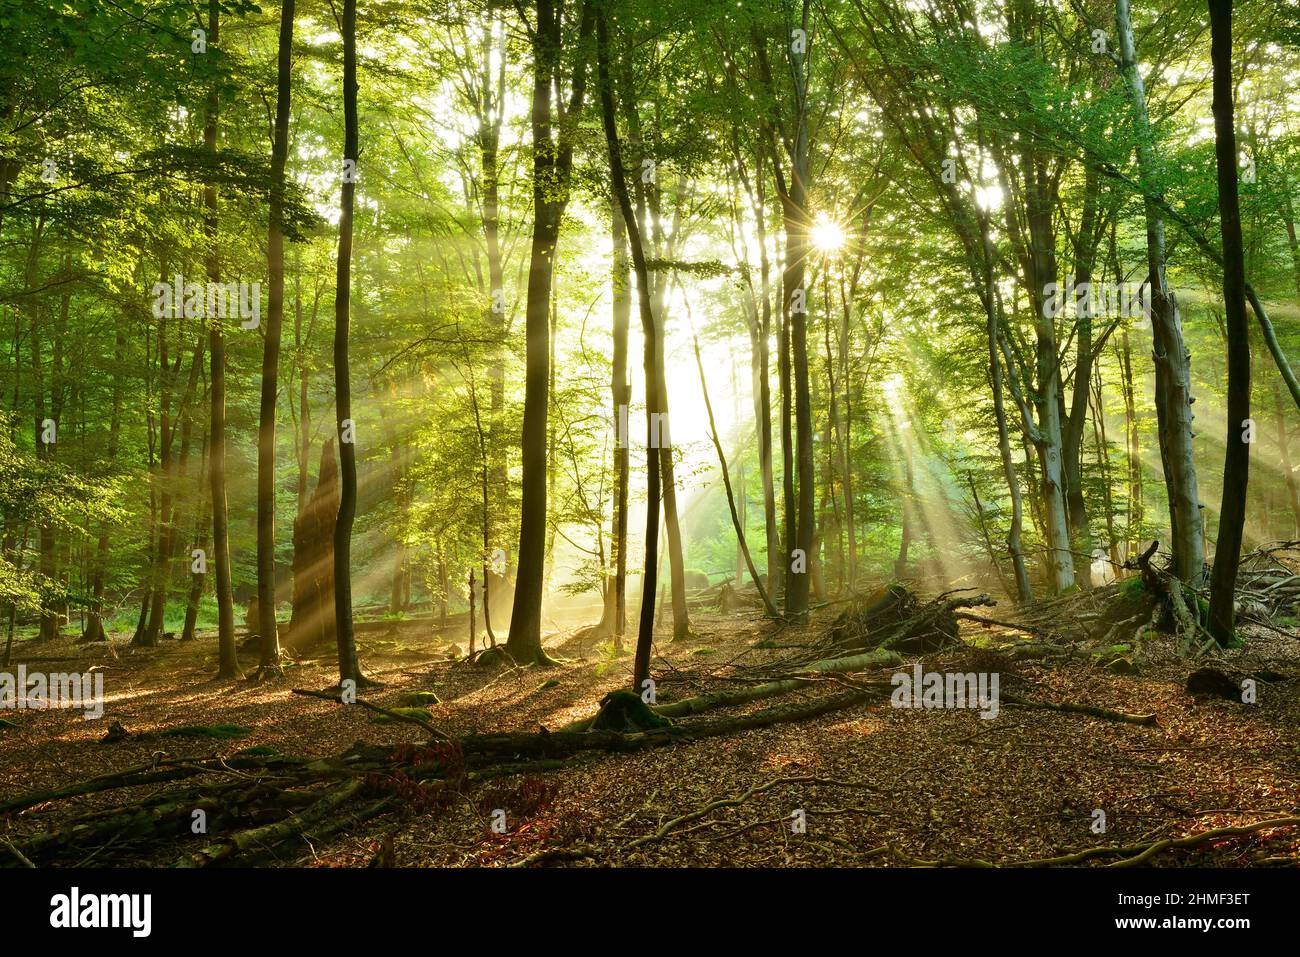 Foresta di faggi inondata di luce con un sacco di legno morto al mattino presto, il sole splende attraverso la nebbia, Reinhardswald, Assia, Germania Foto Stock